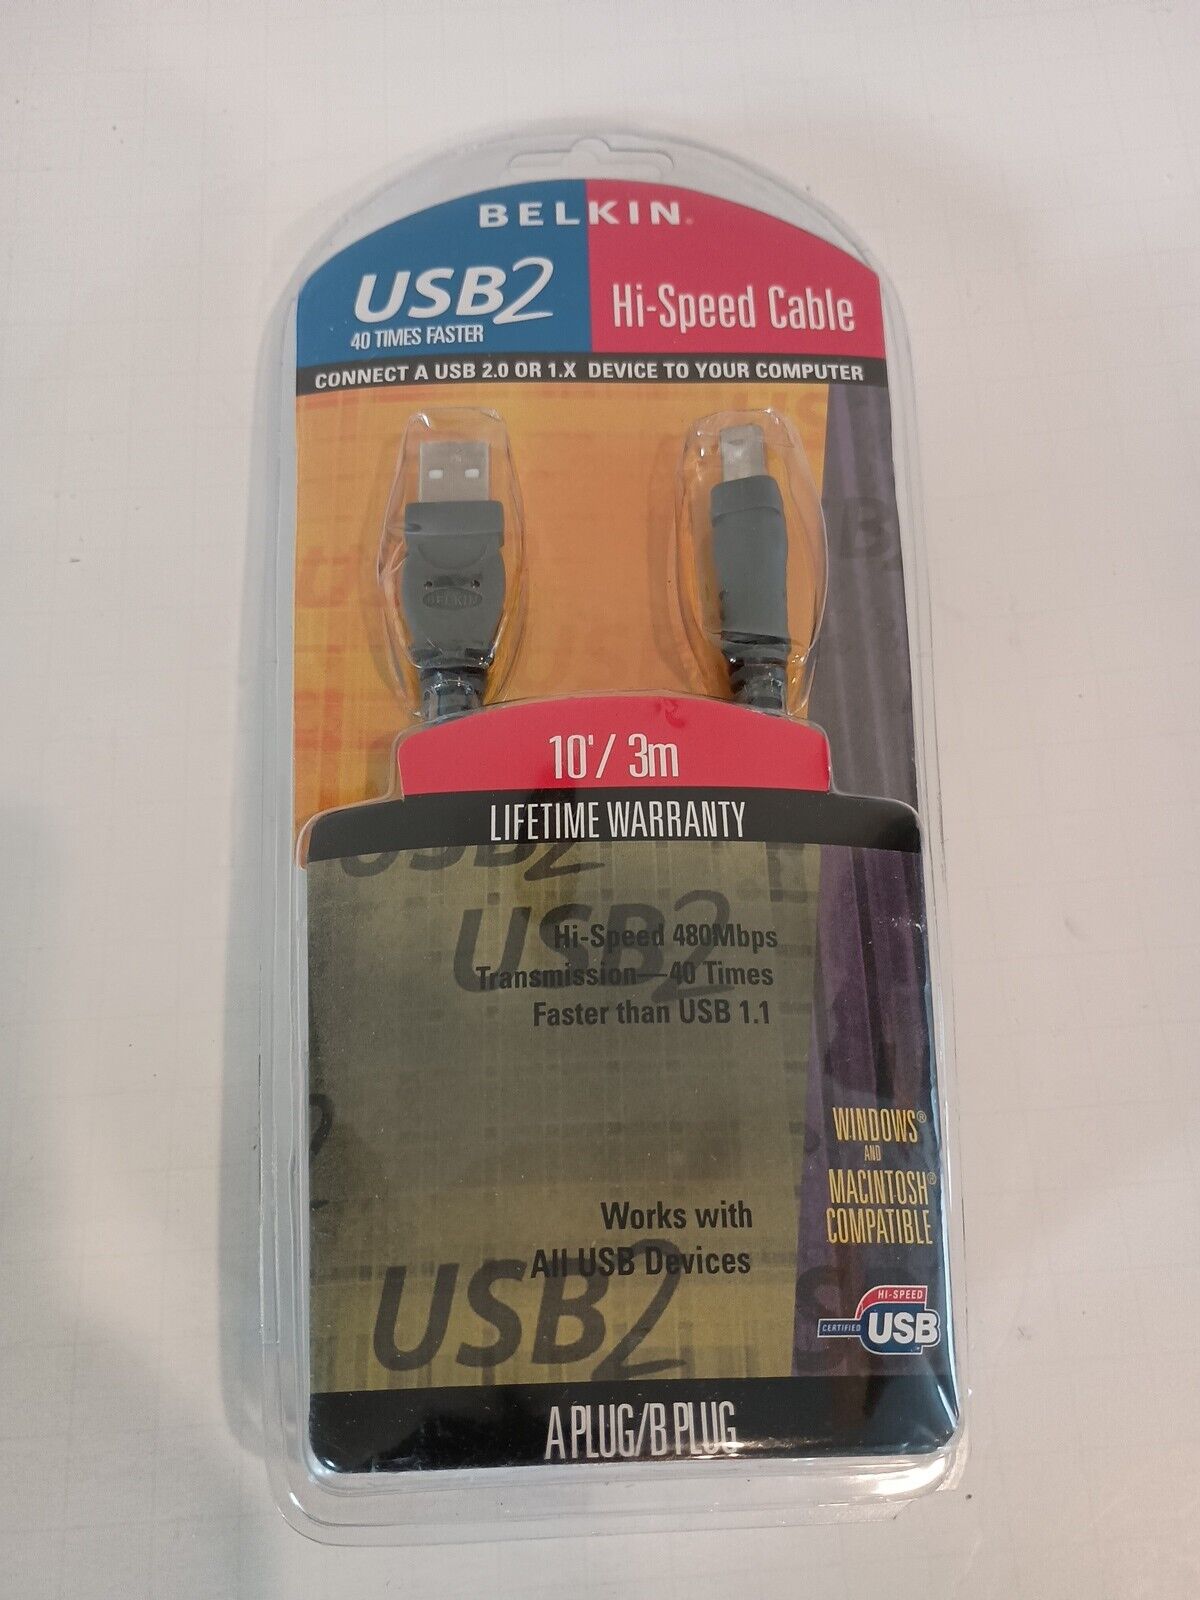 Belkin USB 2.0 F3U133-10 USB2 Hi-Speed Cable- NEW in pkg